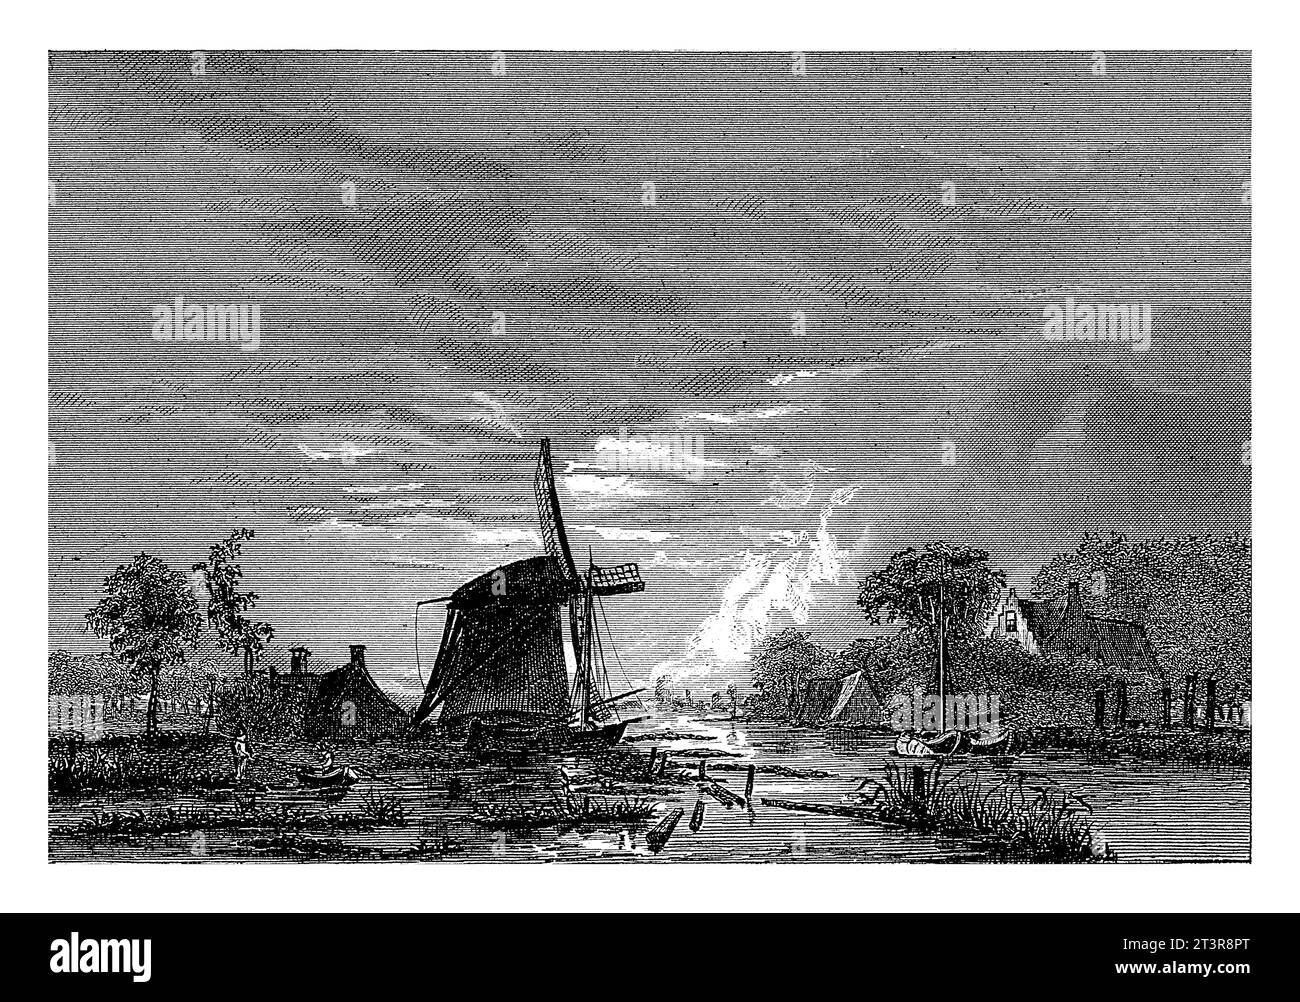 Mulino su un fiume, Christiaan Lodewijk van Kesteren, 1842 - 1897 sulle rive di un fiume, con barche, c'è un mulino, ospita alcuni alberi. Foto Stock